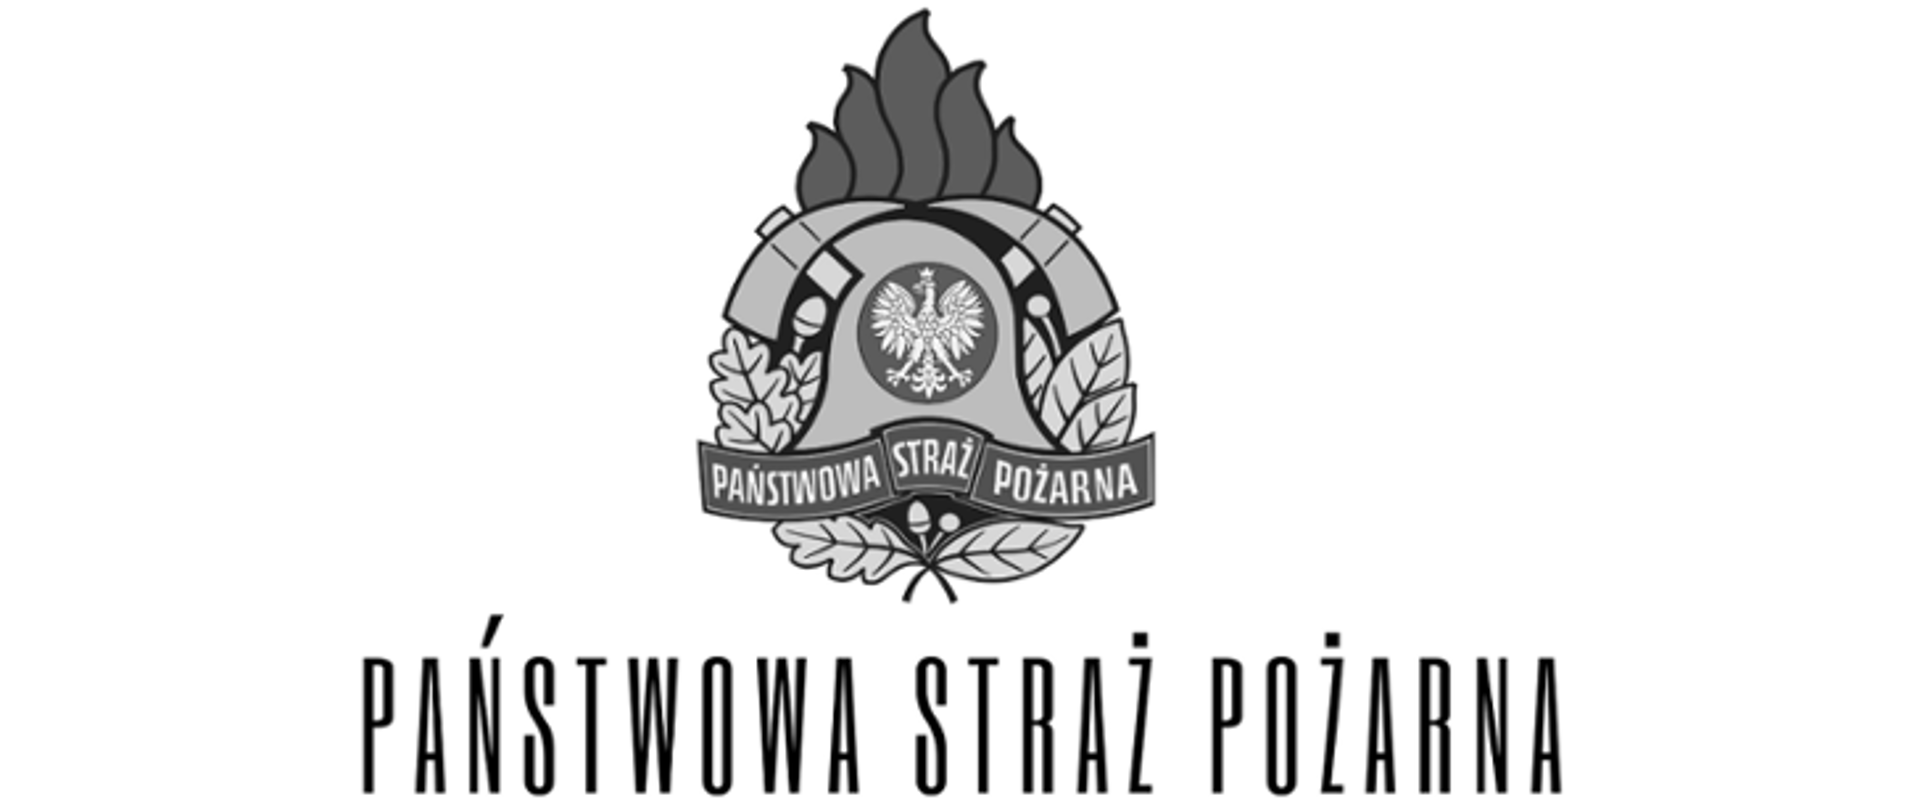 Logo Państwowej Straży Pożarnej w czarnobiałych barwach.